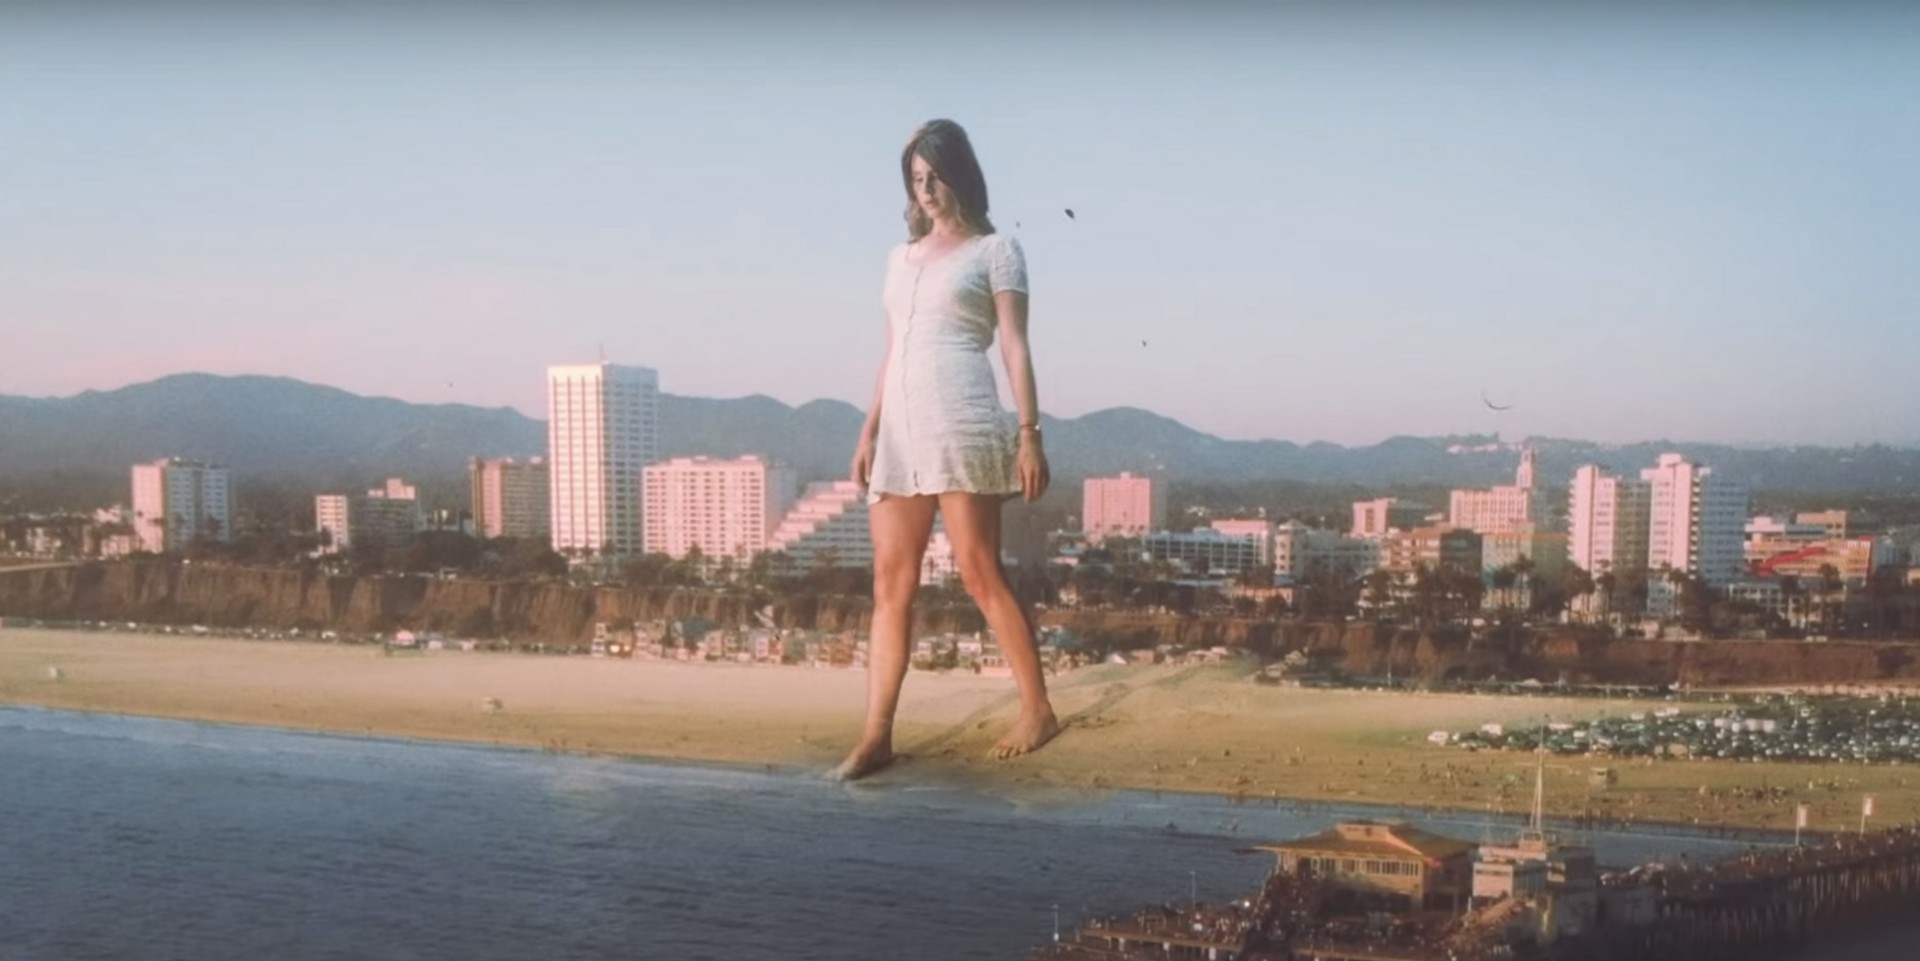 Lana Del Rey releases long-awaited album, shares music video for 'Doin' Time' – listen